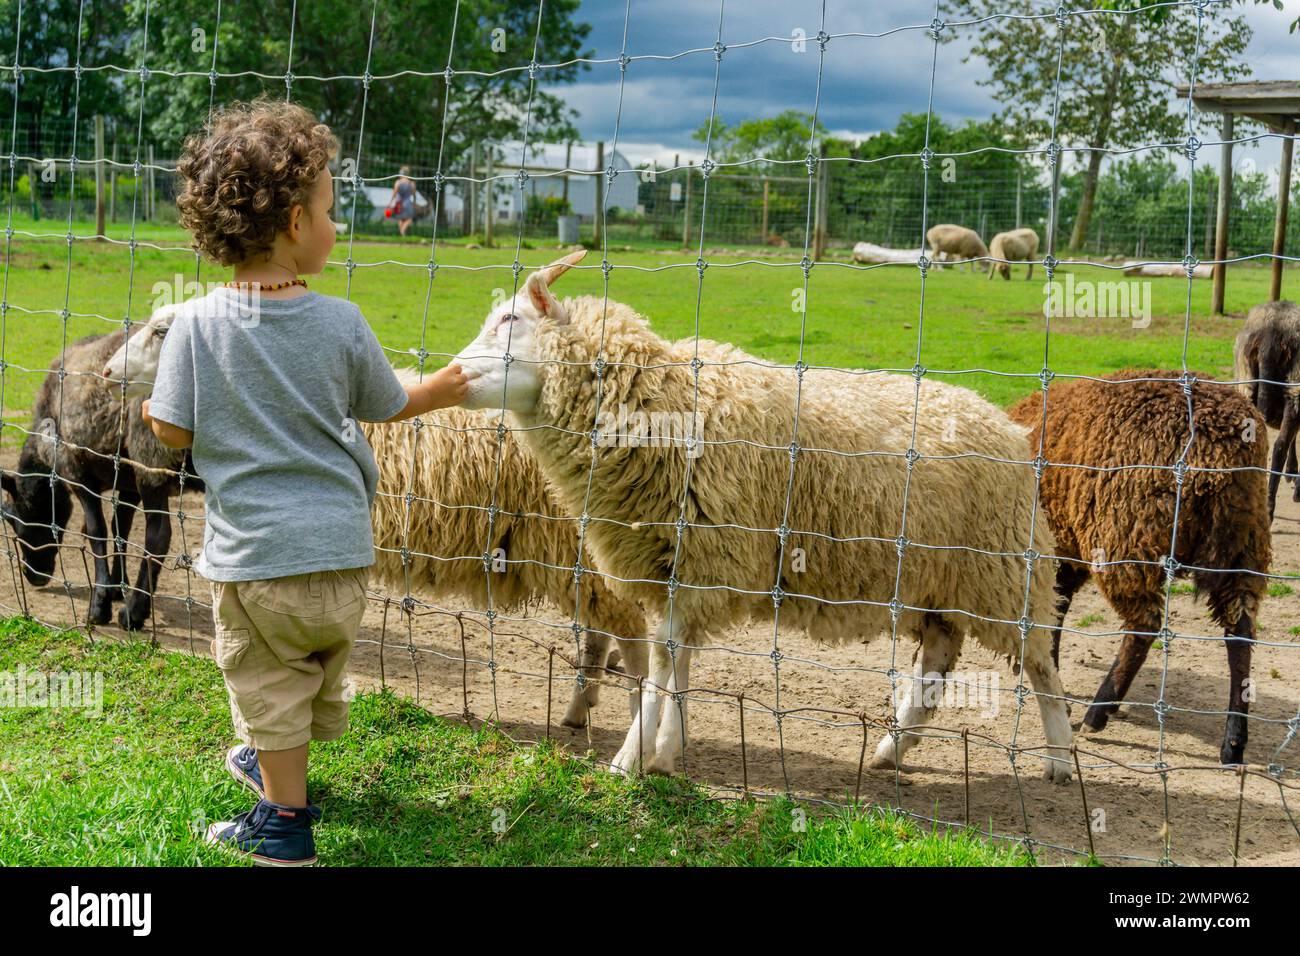 Zoo d'Oshawa, Canada, AUG2017 - enfant de sexe masculin offrant de la nourriture aux moutons à travers une clôture barbelée mettant en valeur une interaction chaleureuse entre l'humain et l'animal. Banque D'Images